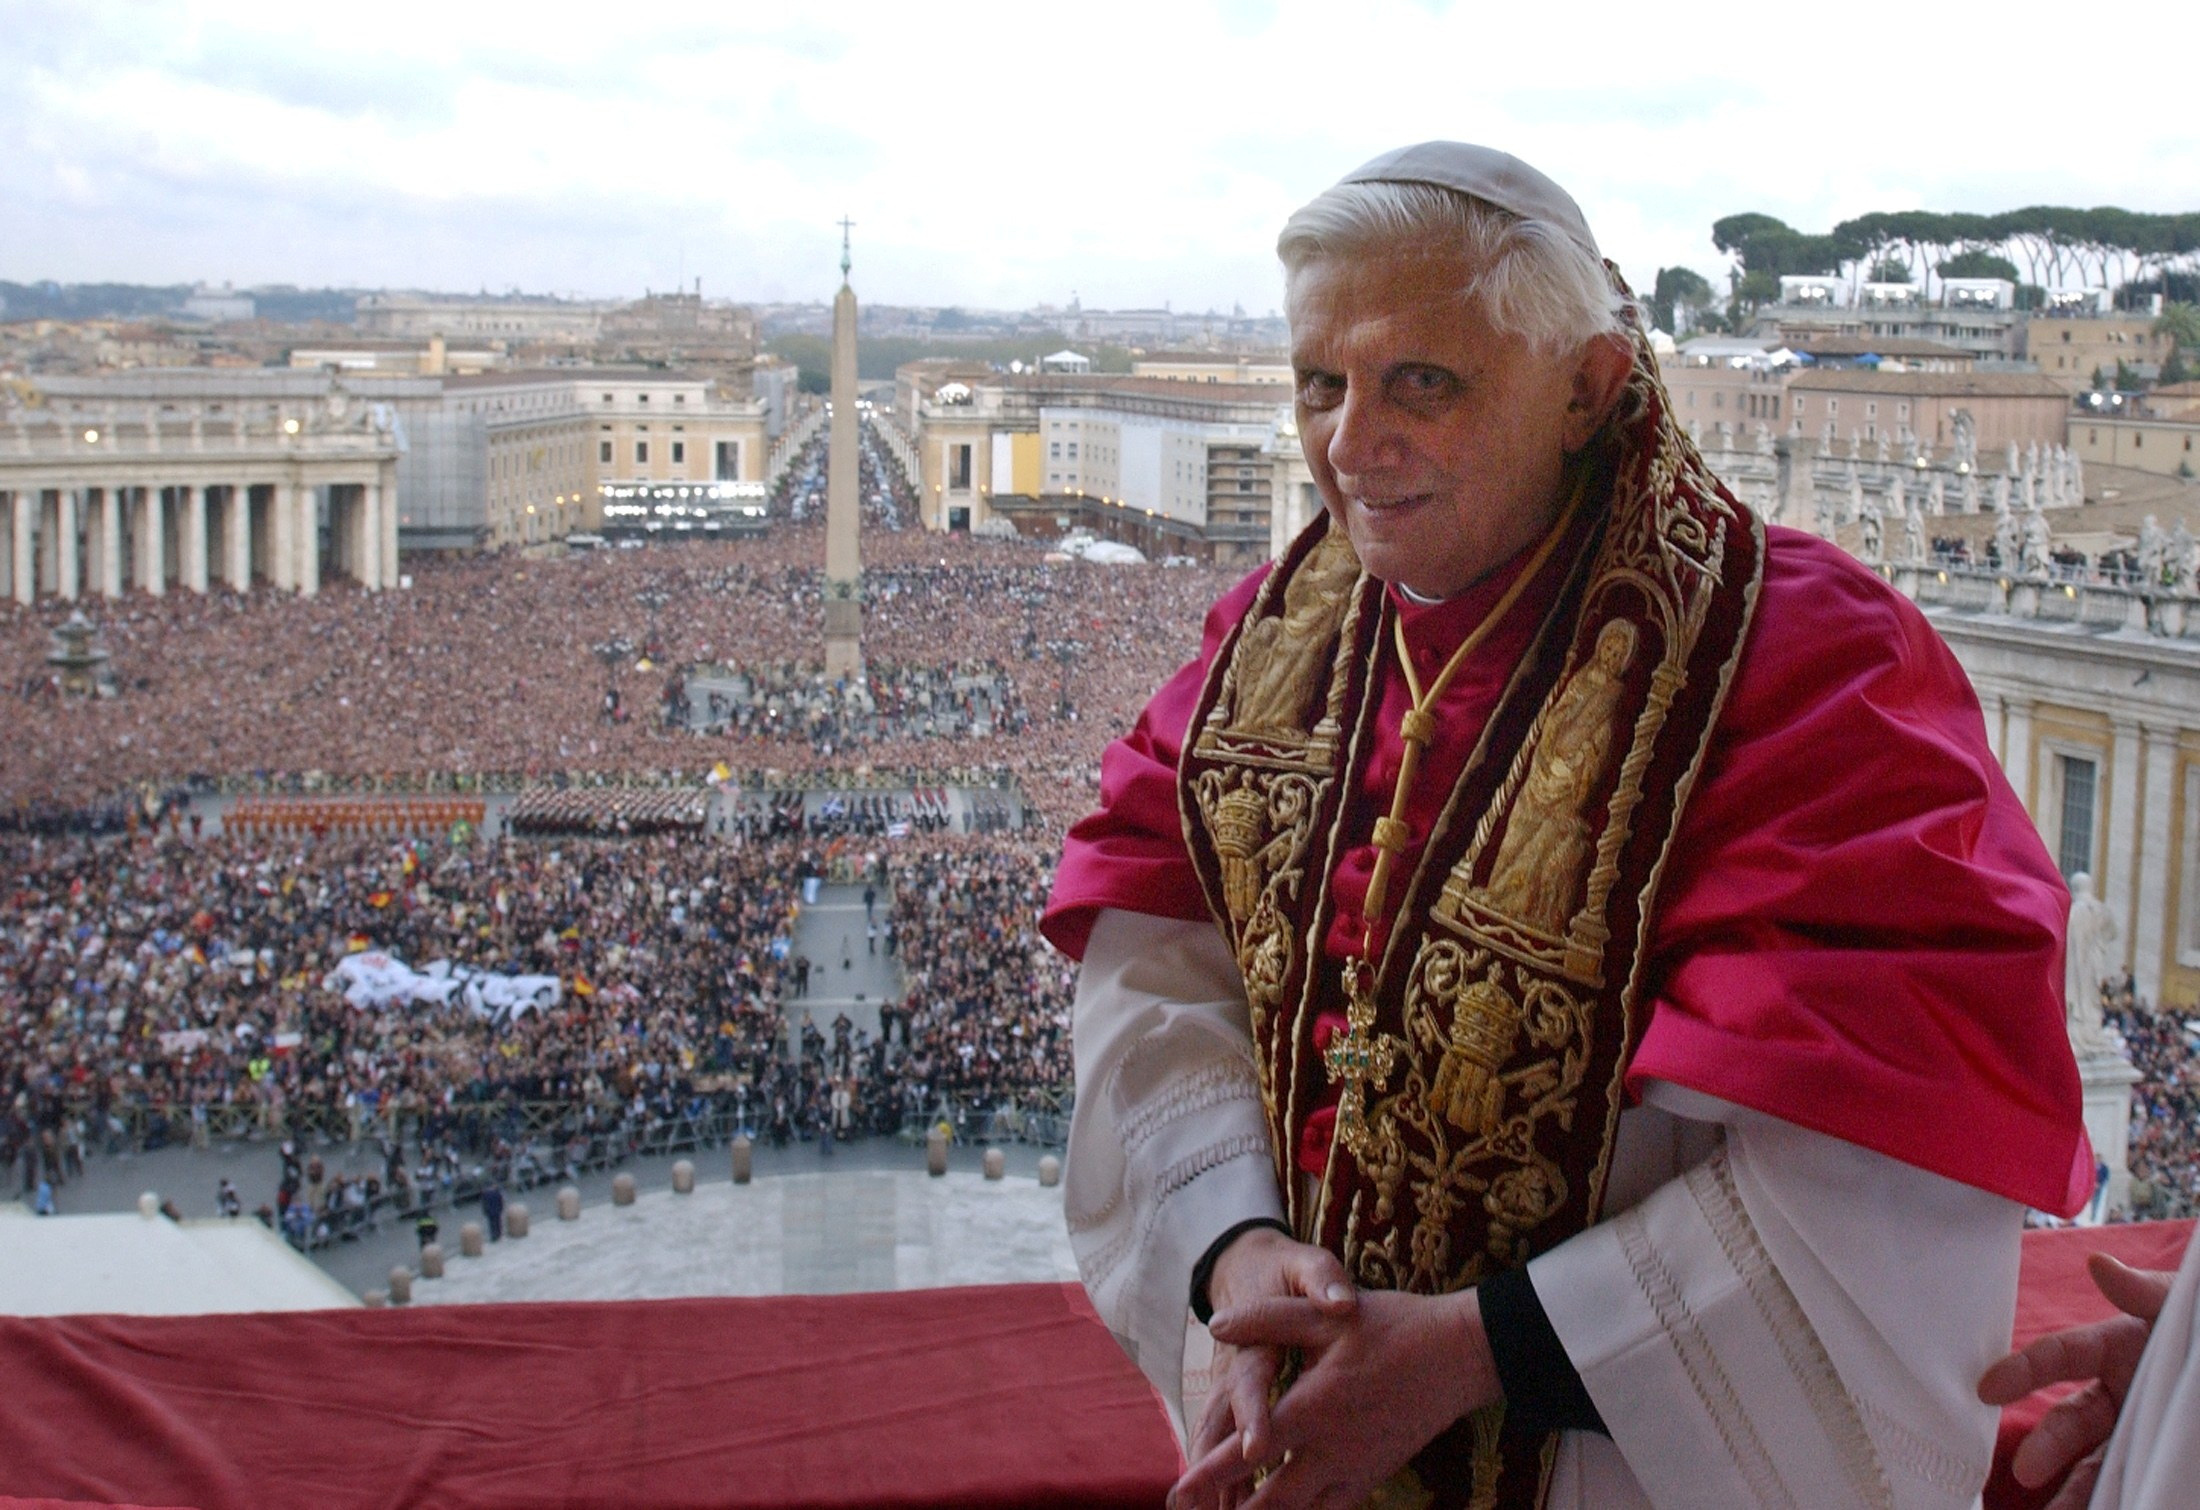 FOTO DE ARCHIVO: El Papa Benedicto XVI, Cardenal Joseph Ratzinger de Alemania, aparece en un balcón de la Basílica de San Pedro en el Vaticano tras ser elegido por el cónclave de cardenales, 19 de abril de 2005 (REUTERS)